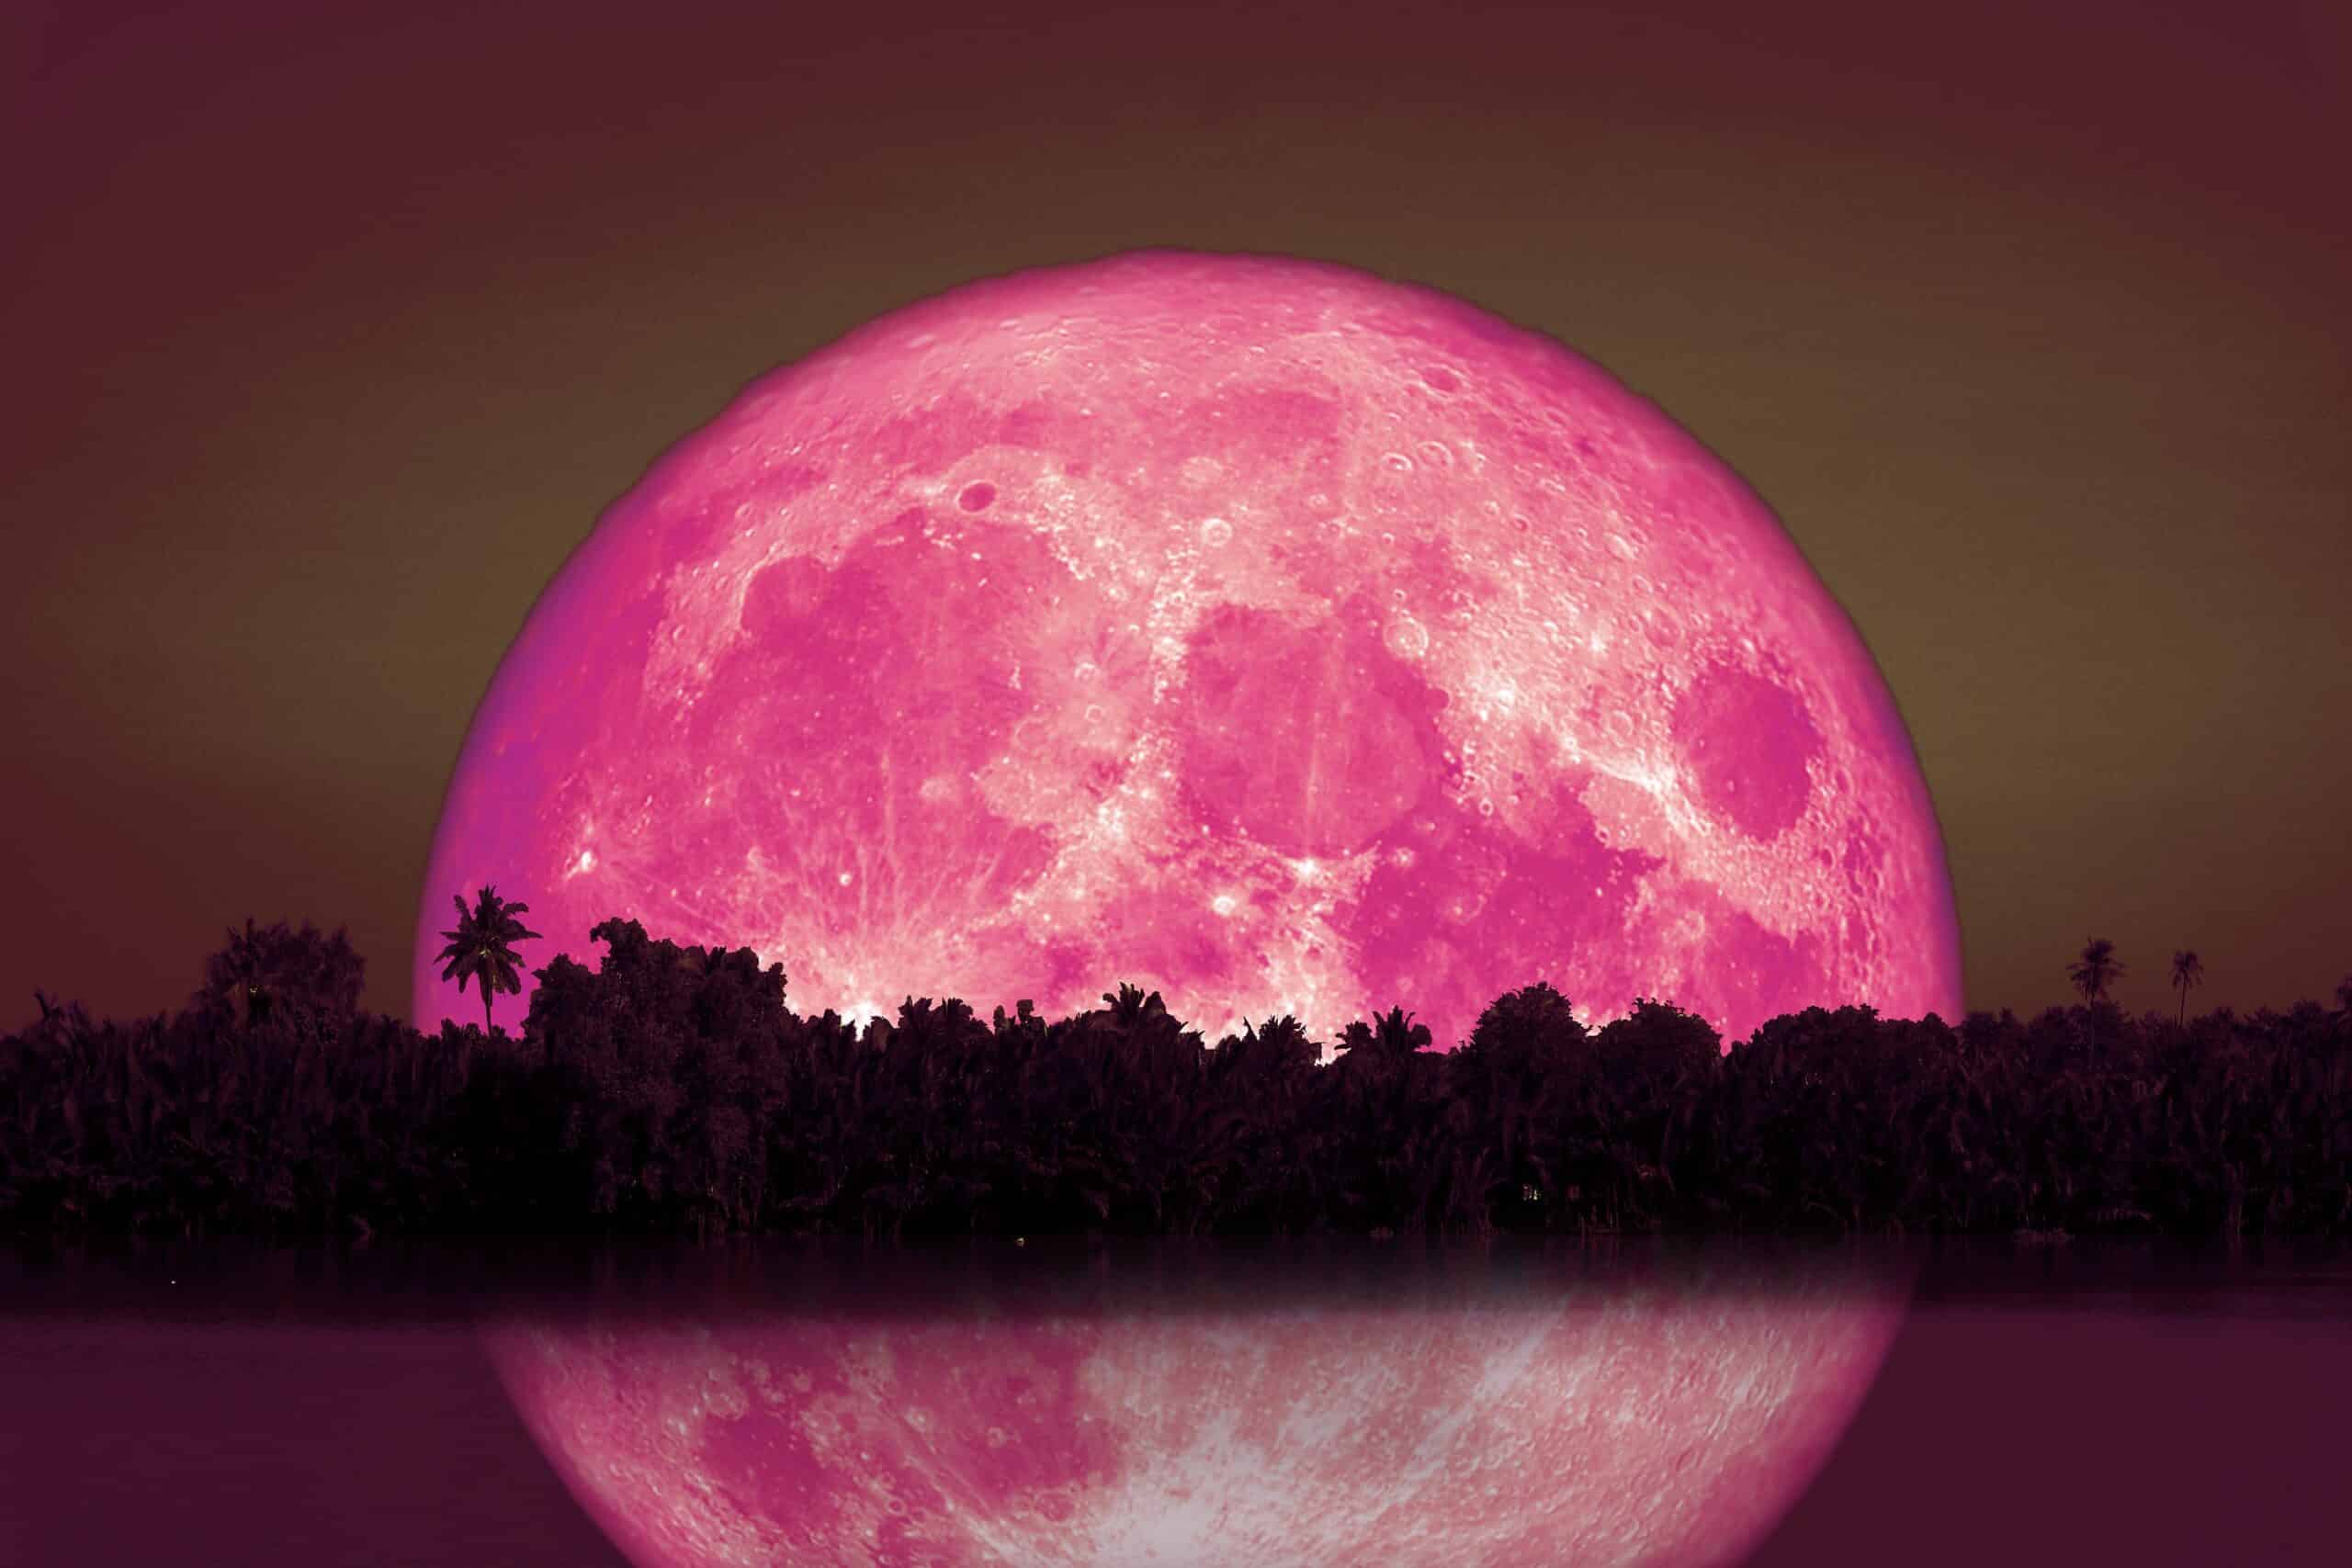 El místico significado espiritual de la luna de fresa ¡Descúbrelo aquí!